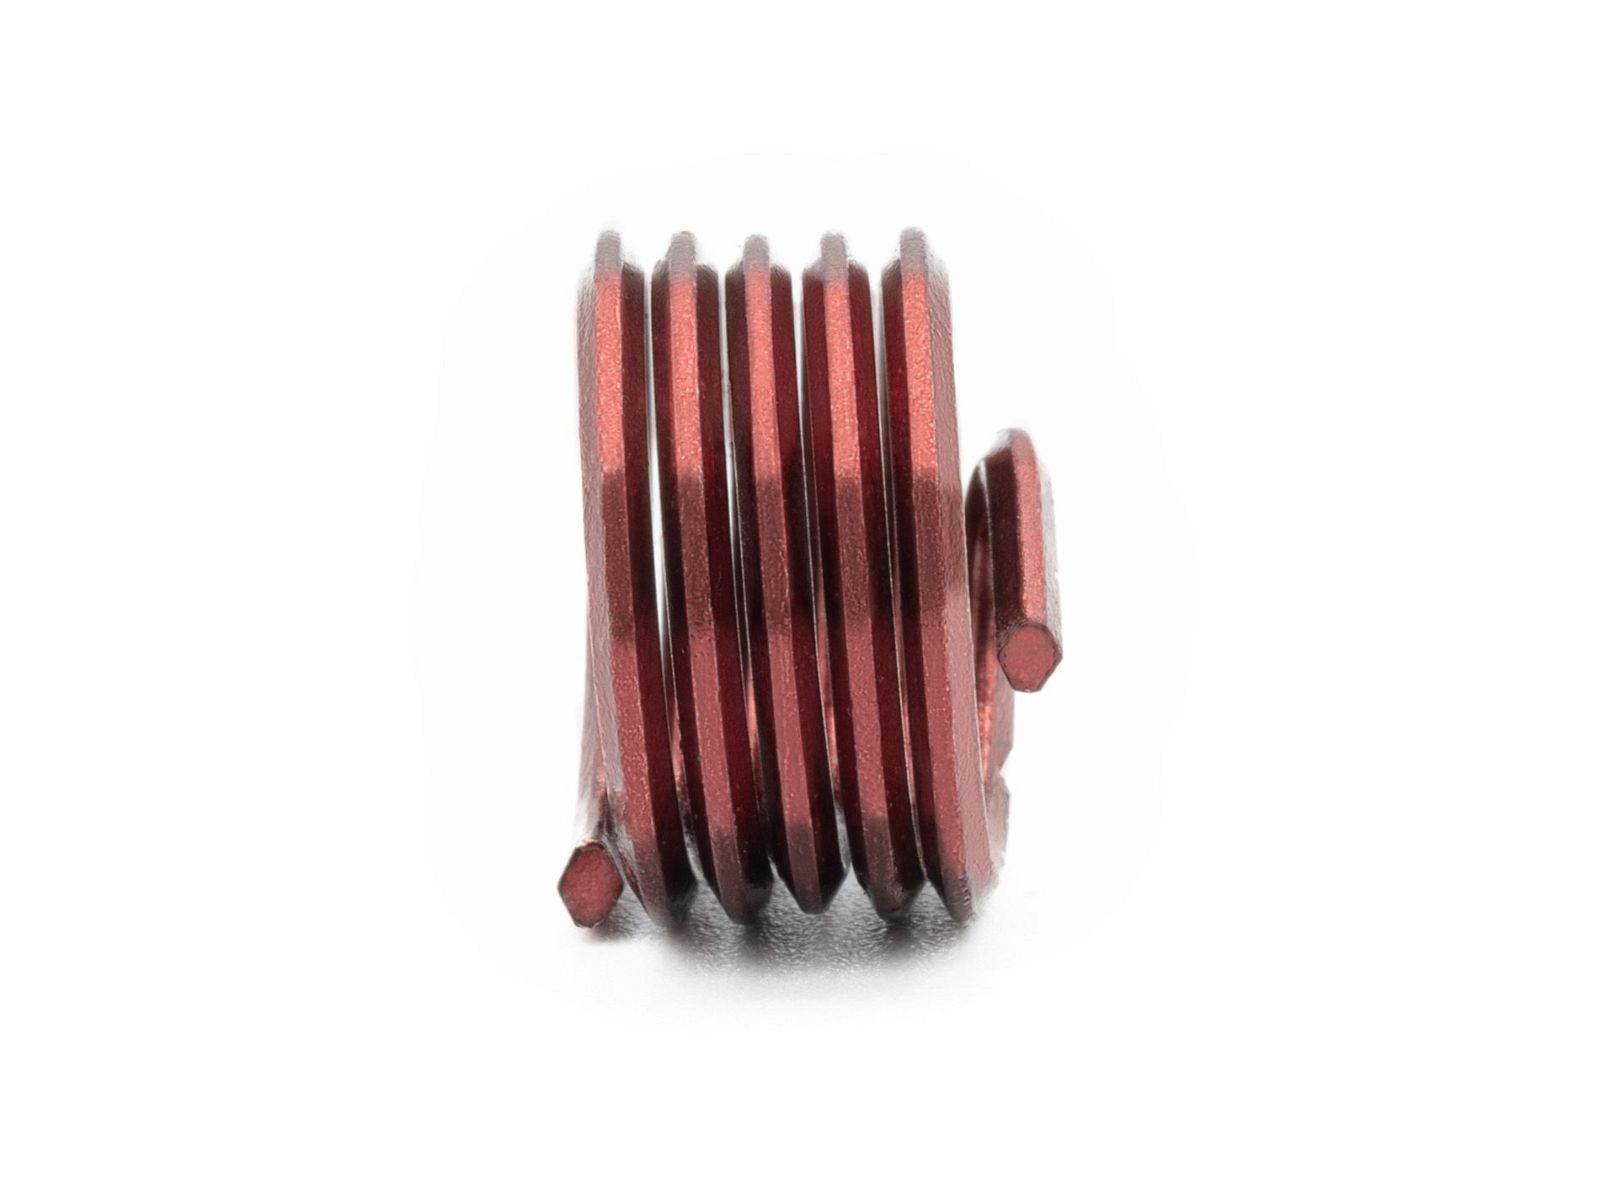 BaerCoil Wire Thread Inserts UNF No. 6 x 40 - 1.0 D (3.51 mm) - screw grip (screw locking) - 100 pcs.